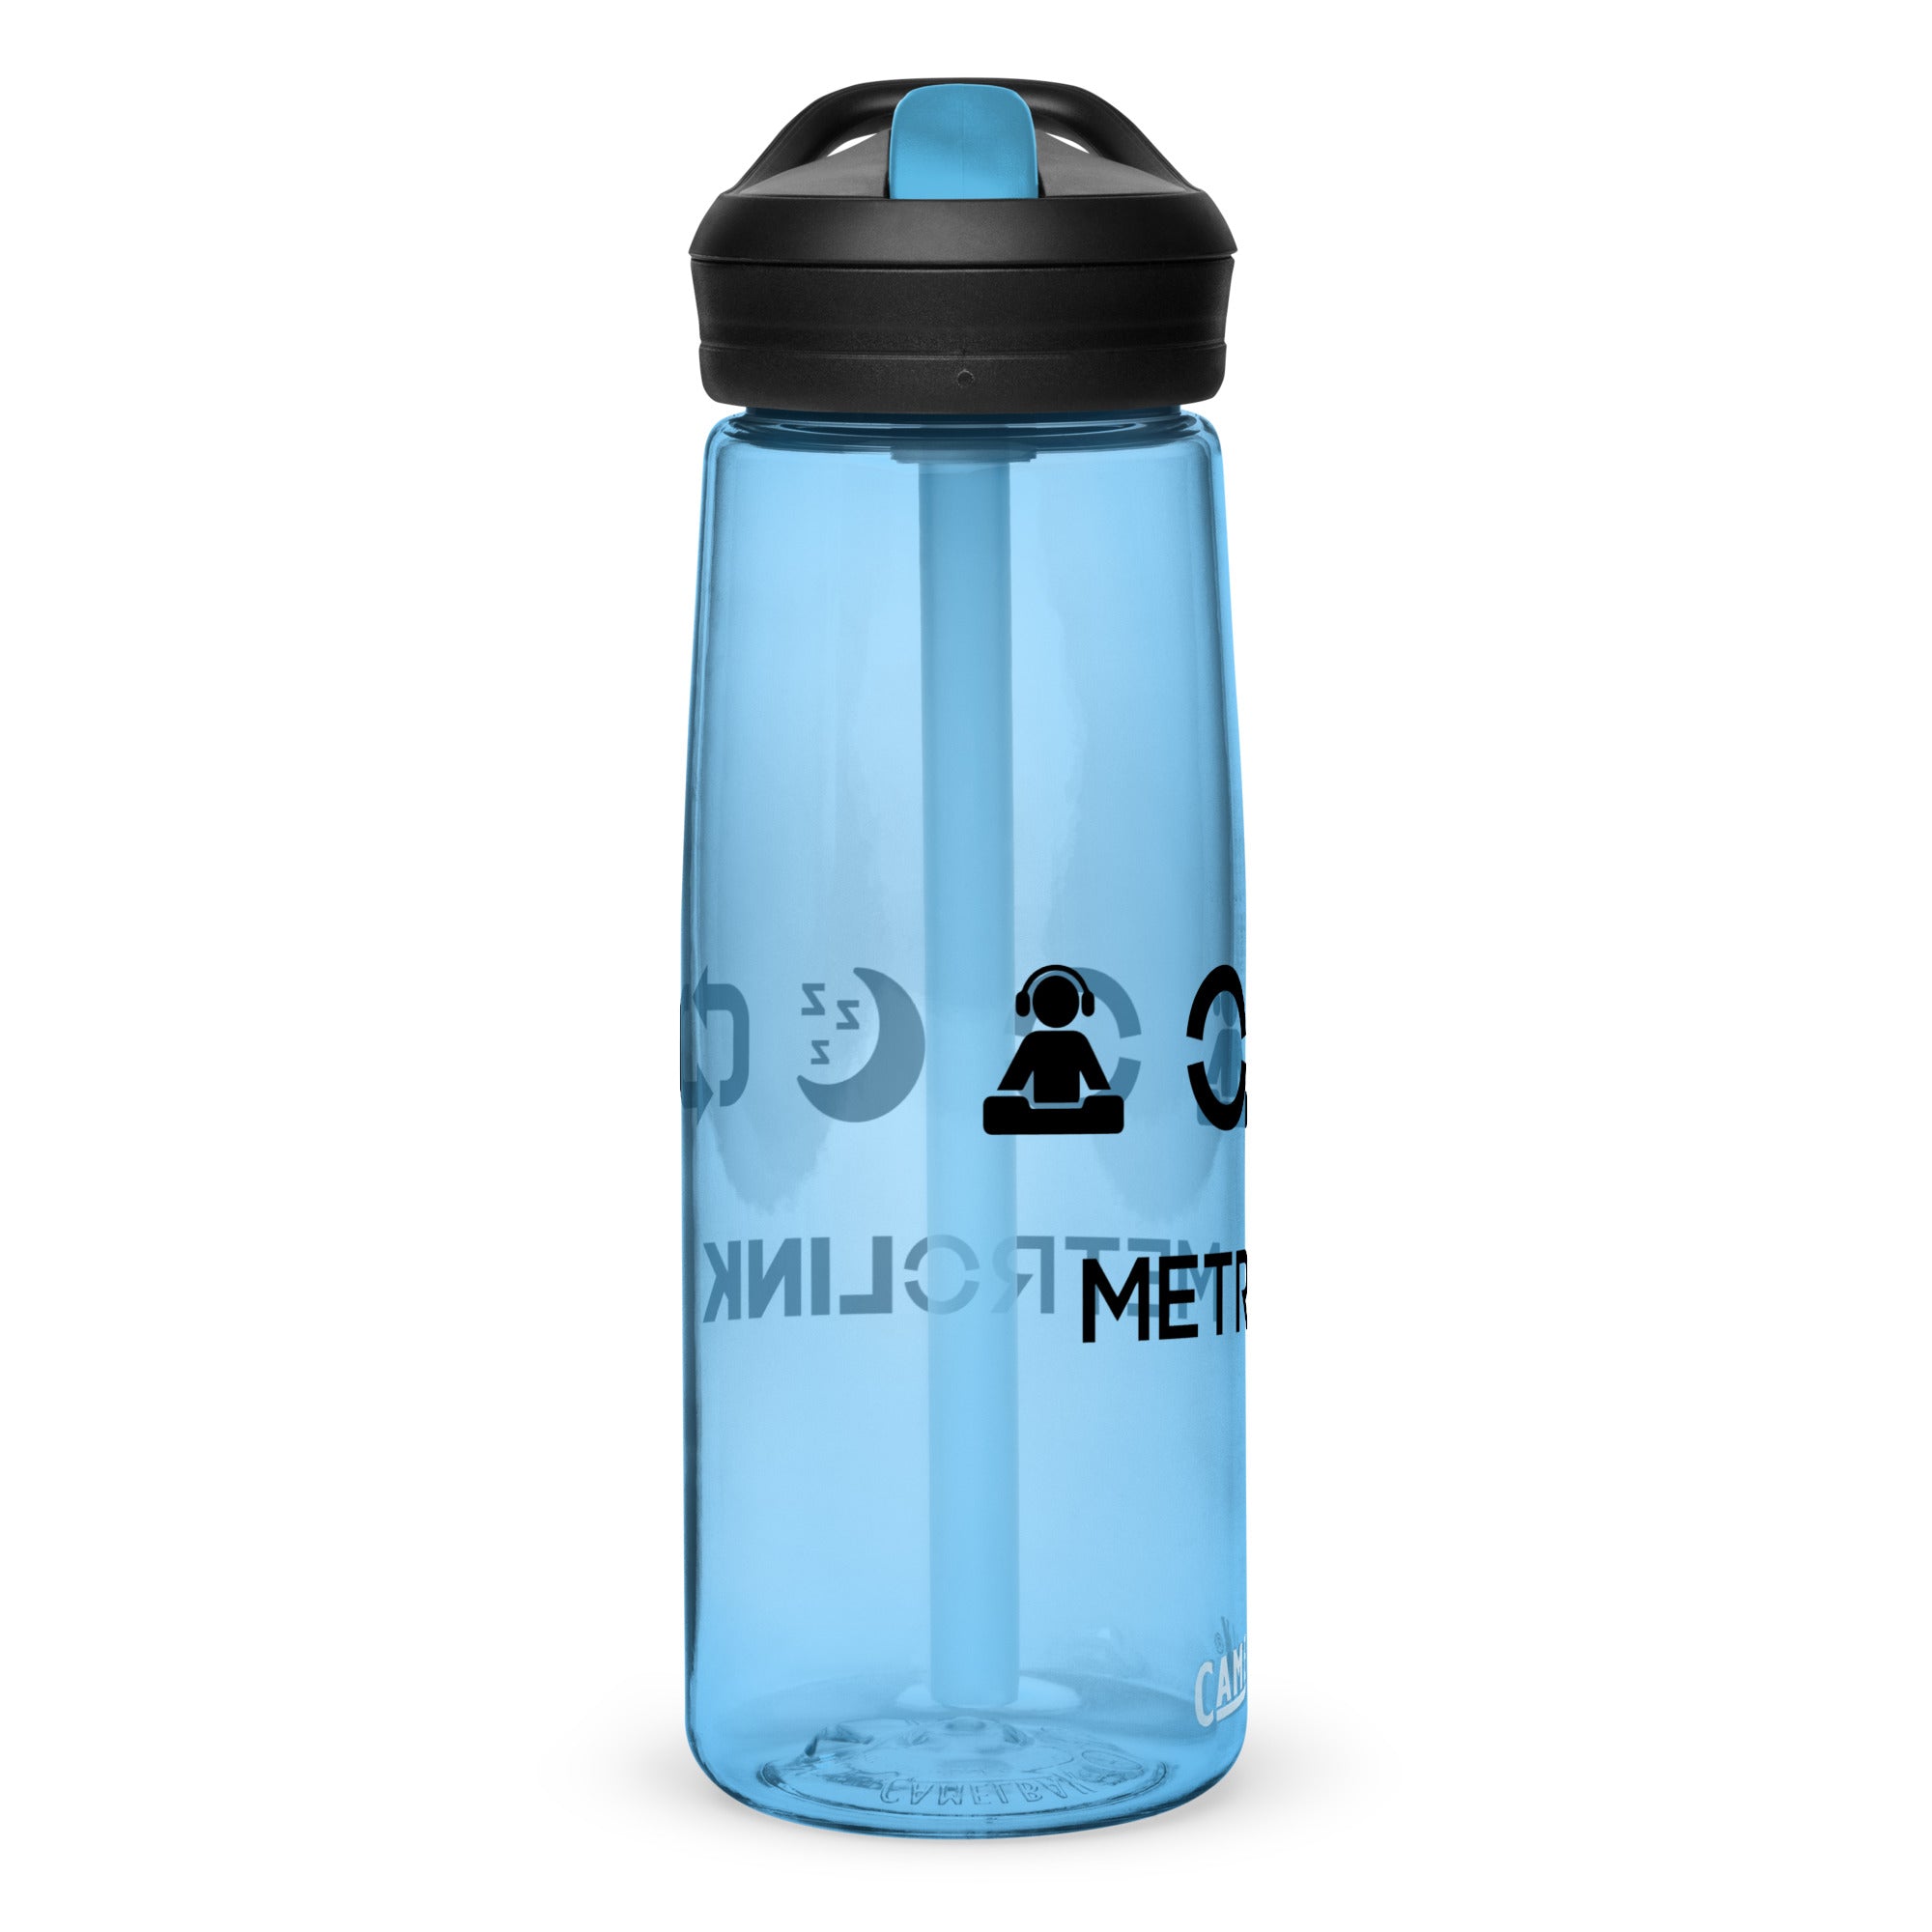 Personalized Kids CamelBak Water Bottle